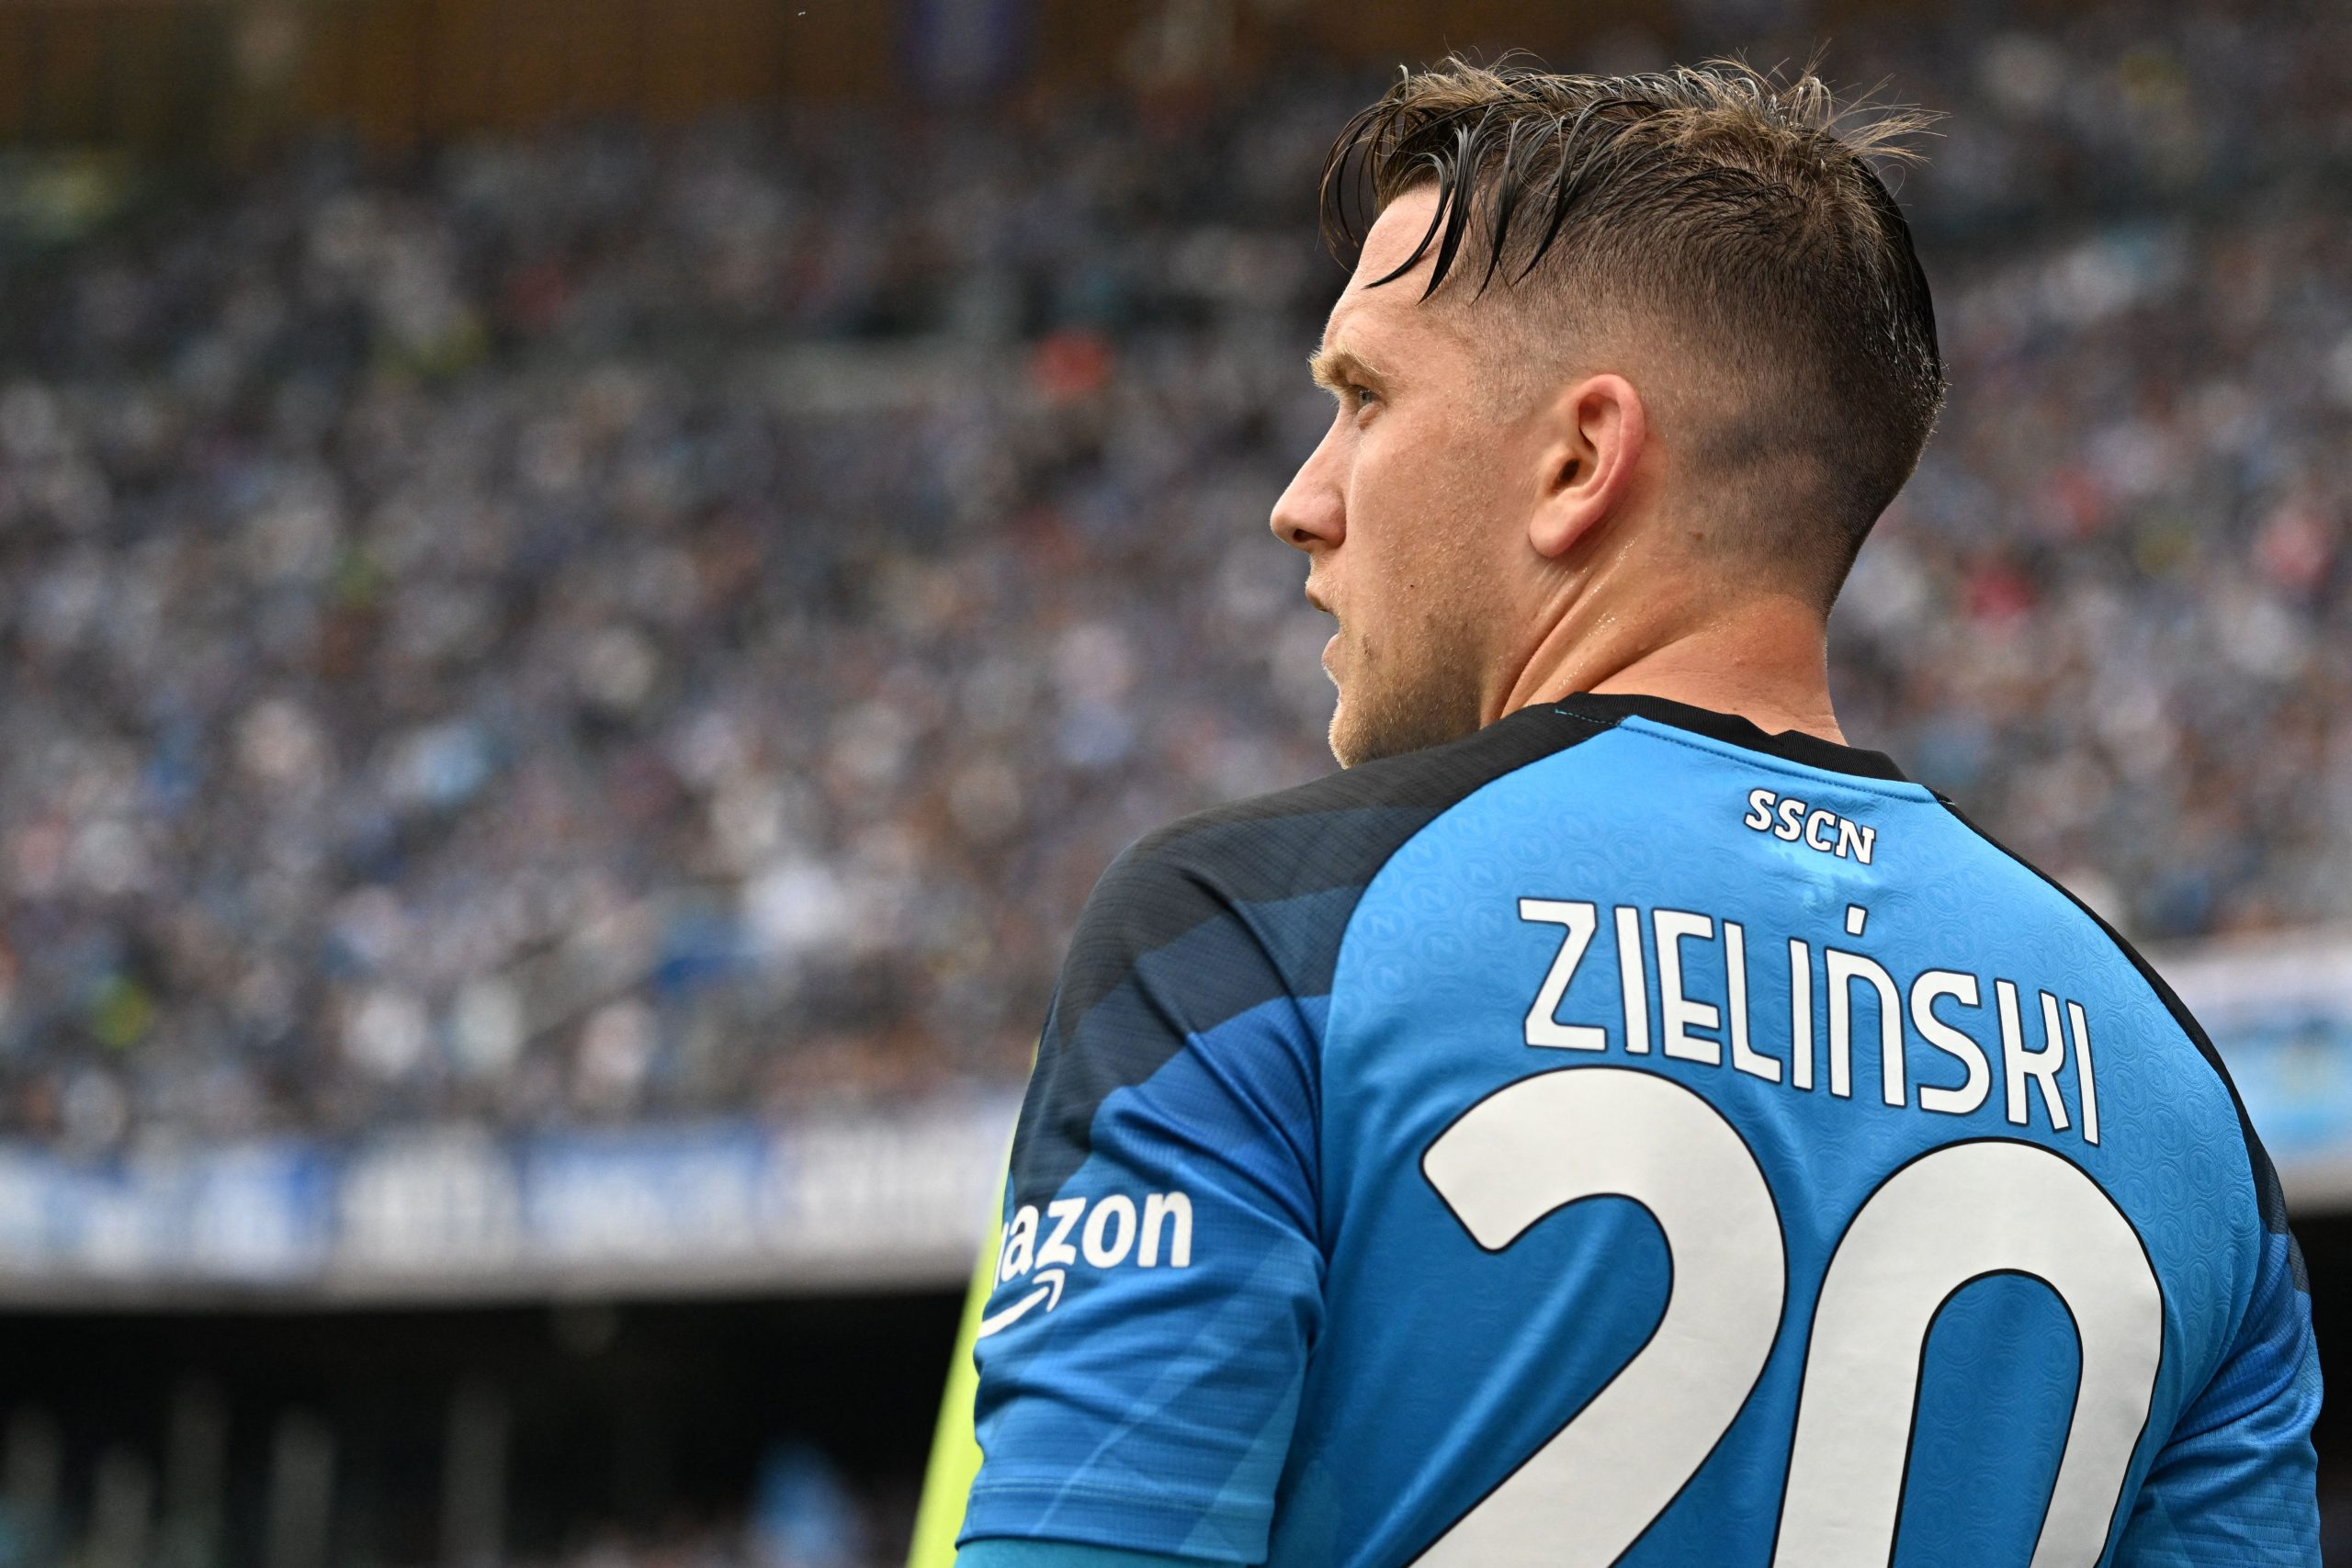 Manchester United 'set their sights' on Napoli midfielder Piotr Zielinski.